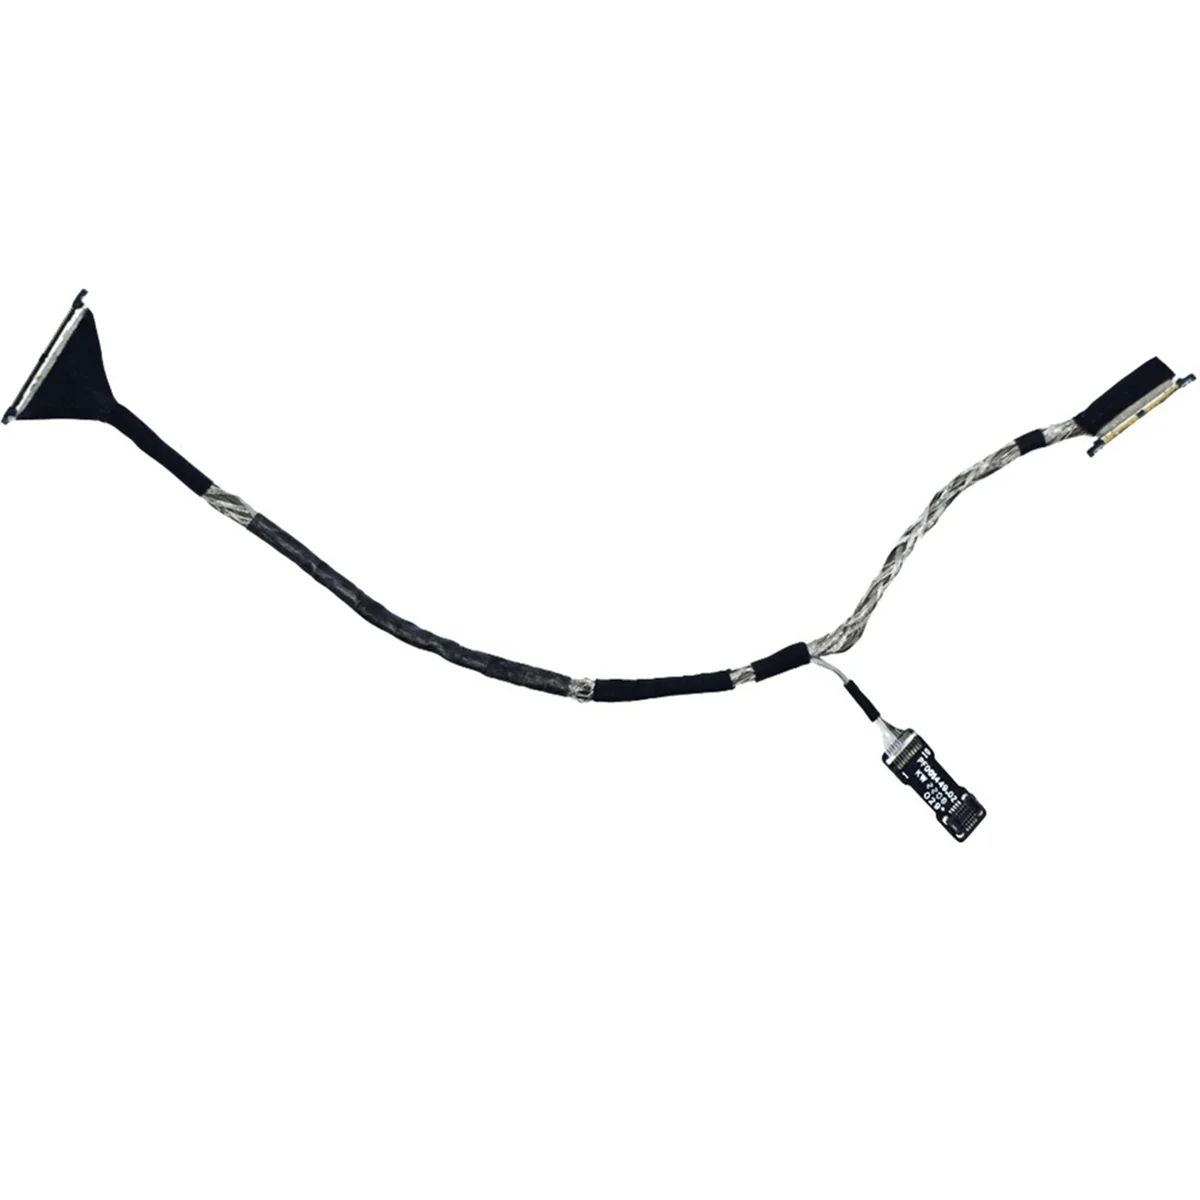 

Сигнальный кабель Avata для камеры DJI Avata, коаксиальный кабель Avata, многофункциональные портативные аксессуары для ремонта